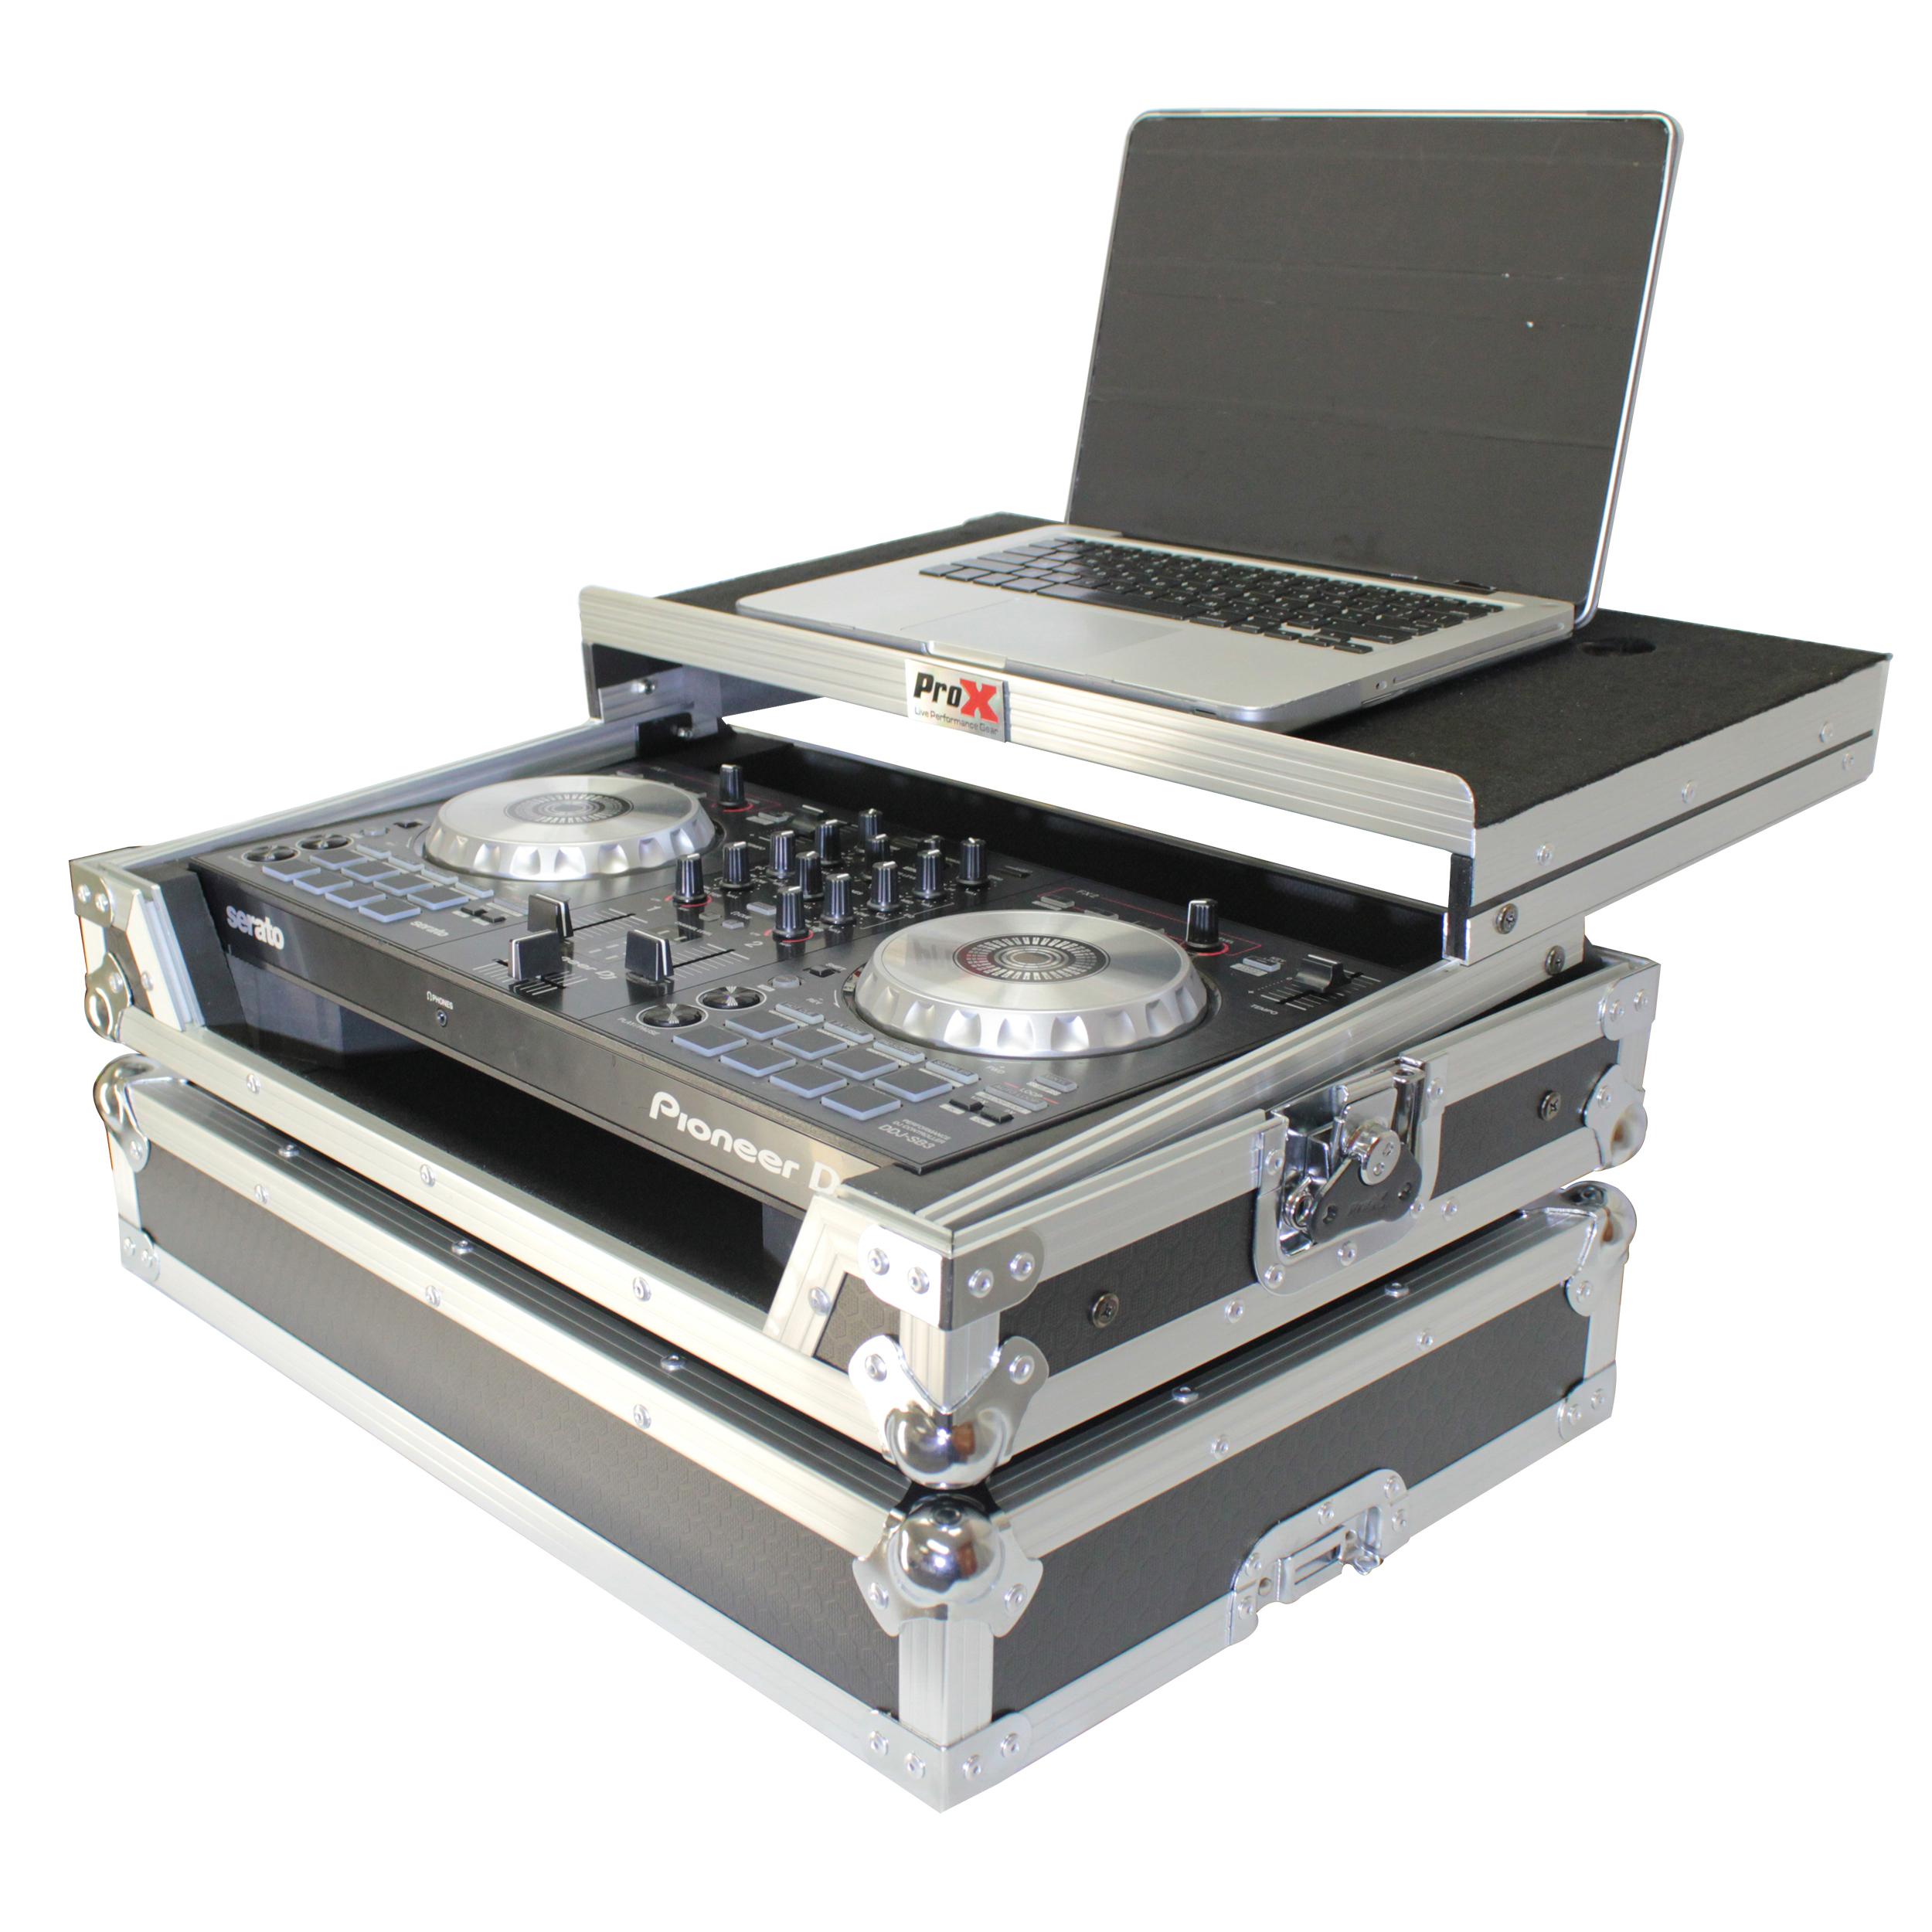 Pioneer DJ DDJ-SB3 Versus Pioneer DJ DDJ-400: Which One To Buy?